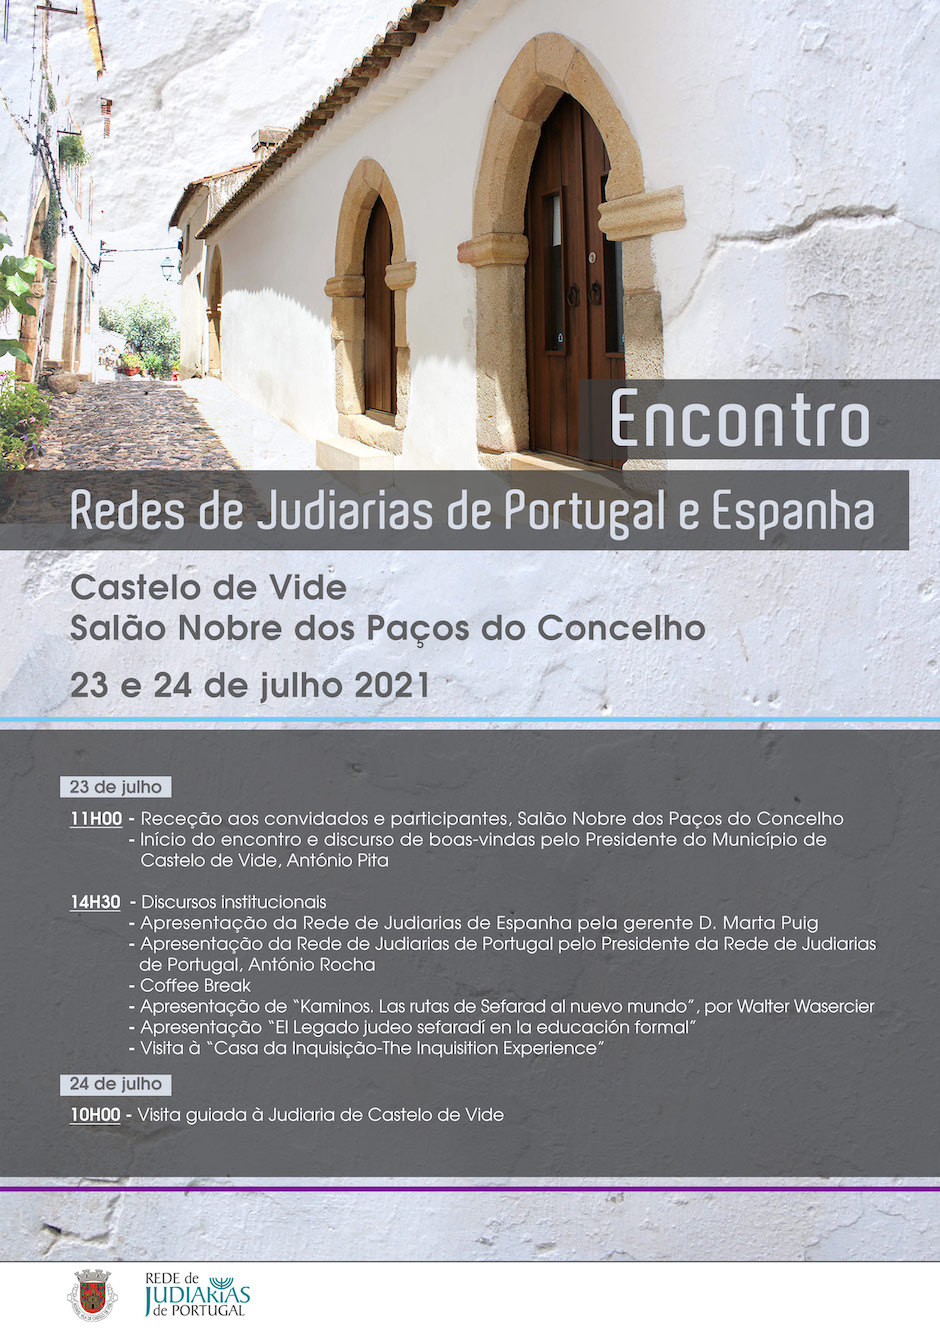 Encontro redes de Judiarias Portugal Espanha Red de Juderías de España Caminos de Sefarad Castelo do Vide